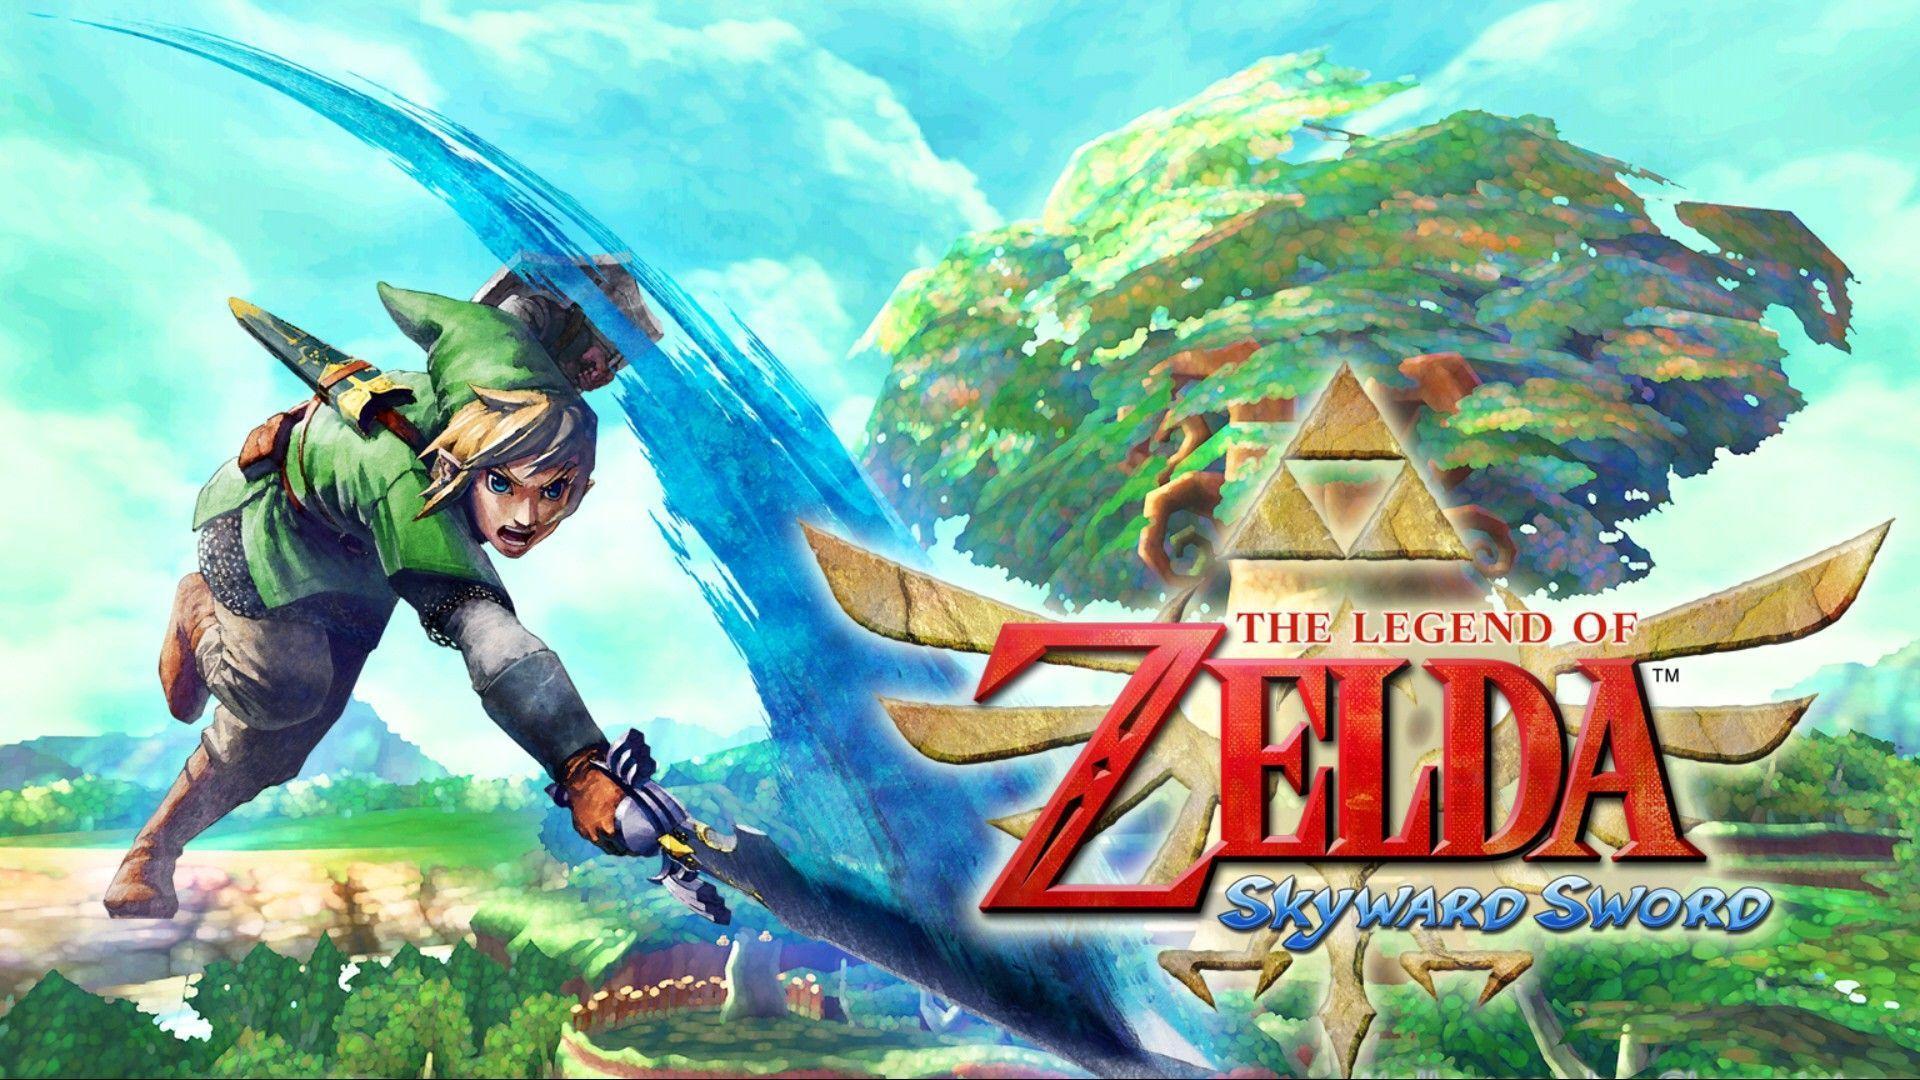 Video Game The Legend Of Zelda: Skyward Sword Wallpaper 1920x1080